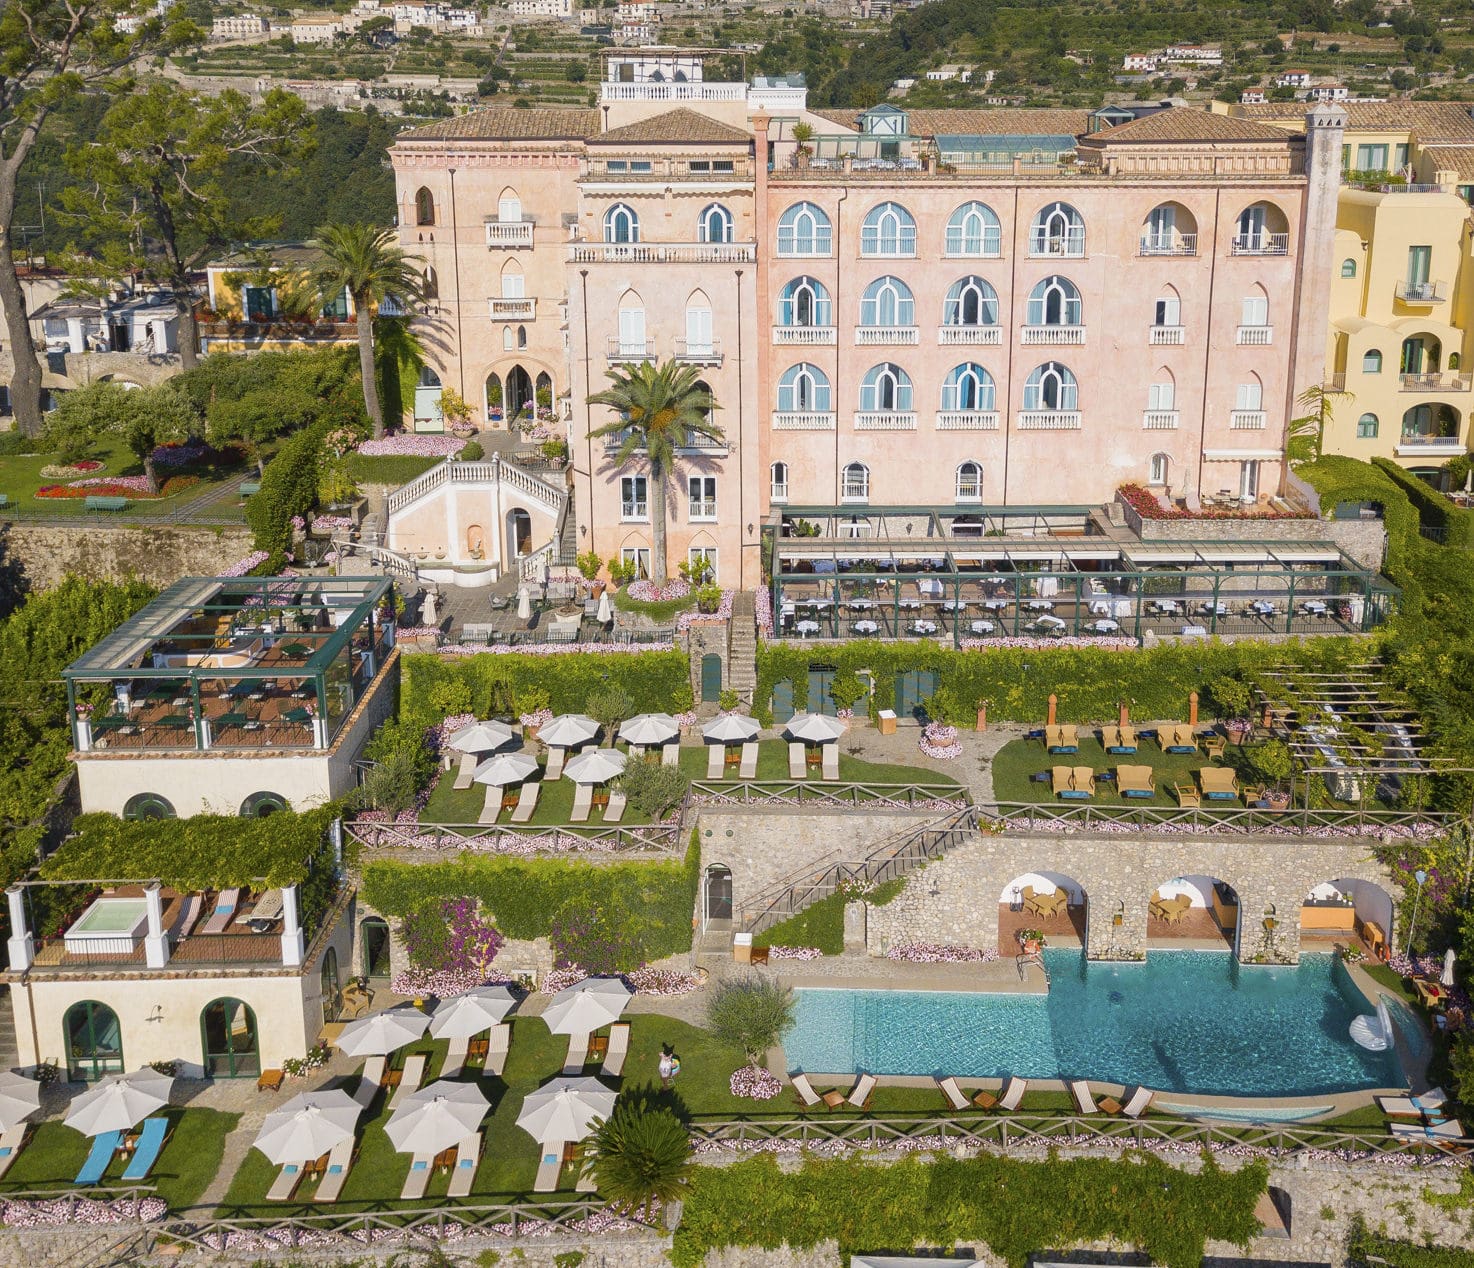 Vista panorámica del lujoso hotel de cinco estrellas Palazzo Avino en la Costa Amalfitana.